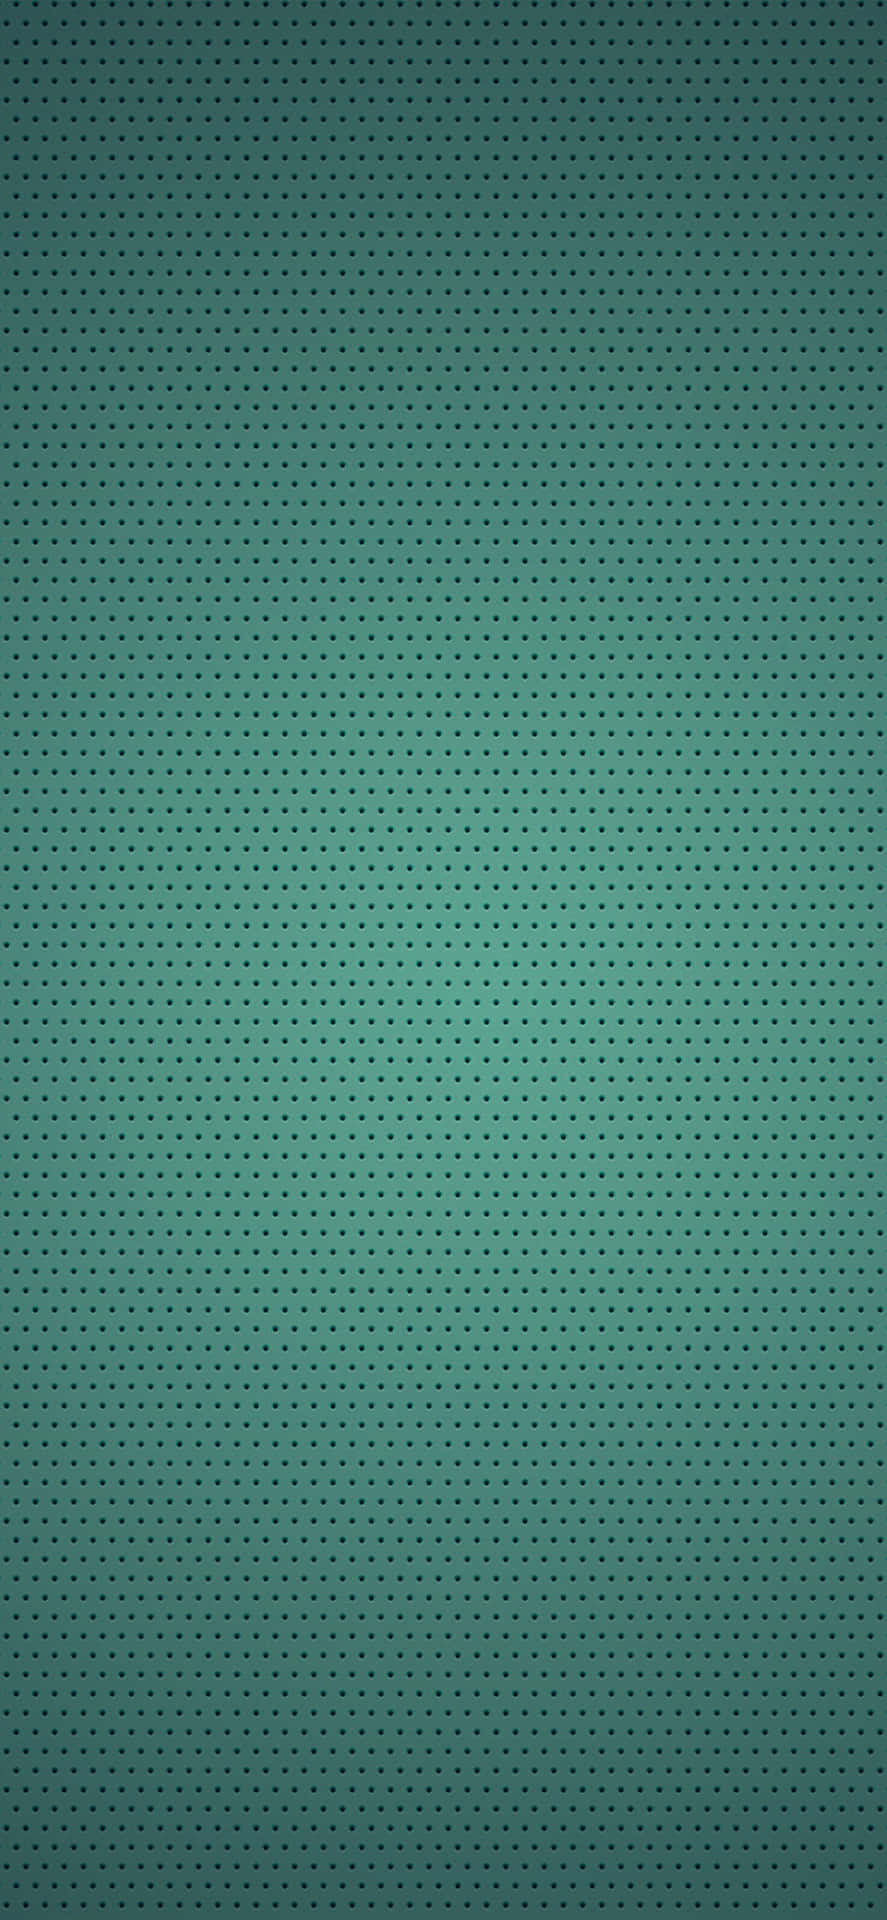 Eingrüner Hintergrund Mit Punkten. Wallpaper